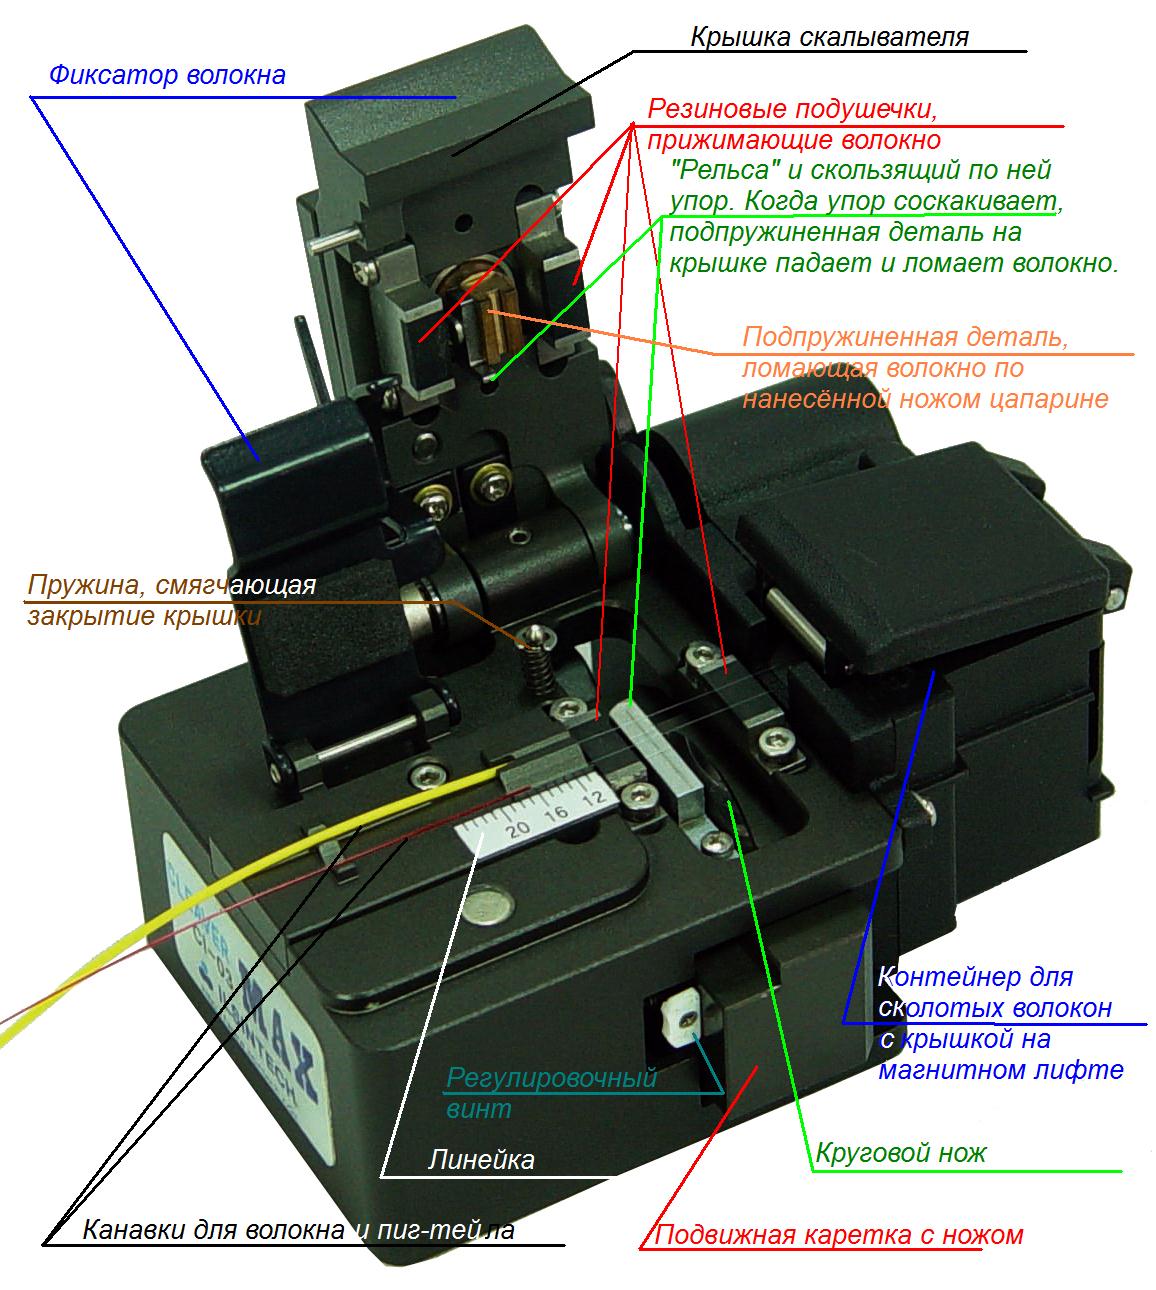 Сварка оптических волокон. Часть 2: сварочные аппараты и скалыватели, механическое и сварное сращивание, отмеривание и укладка волокон